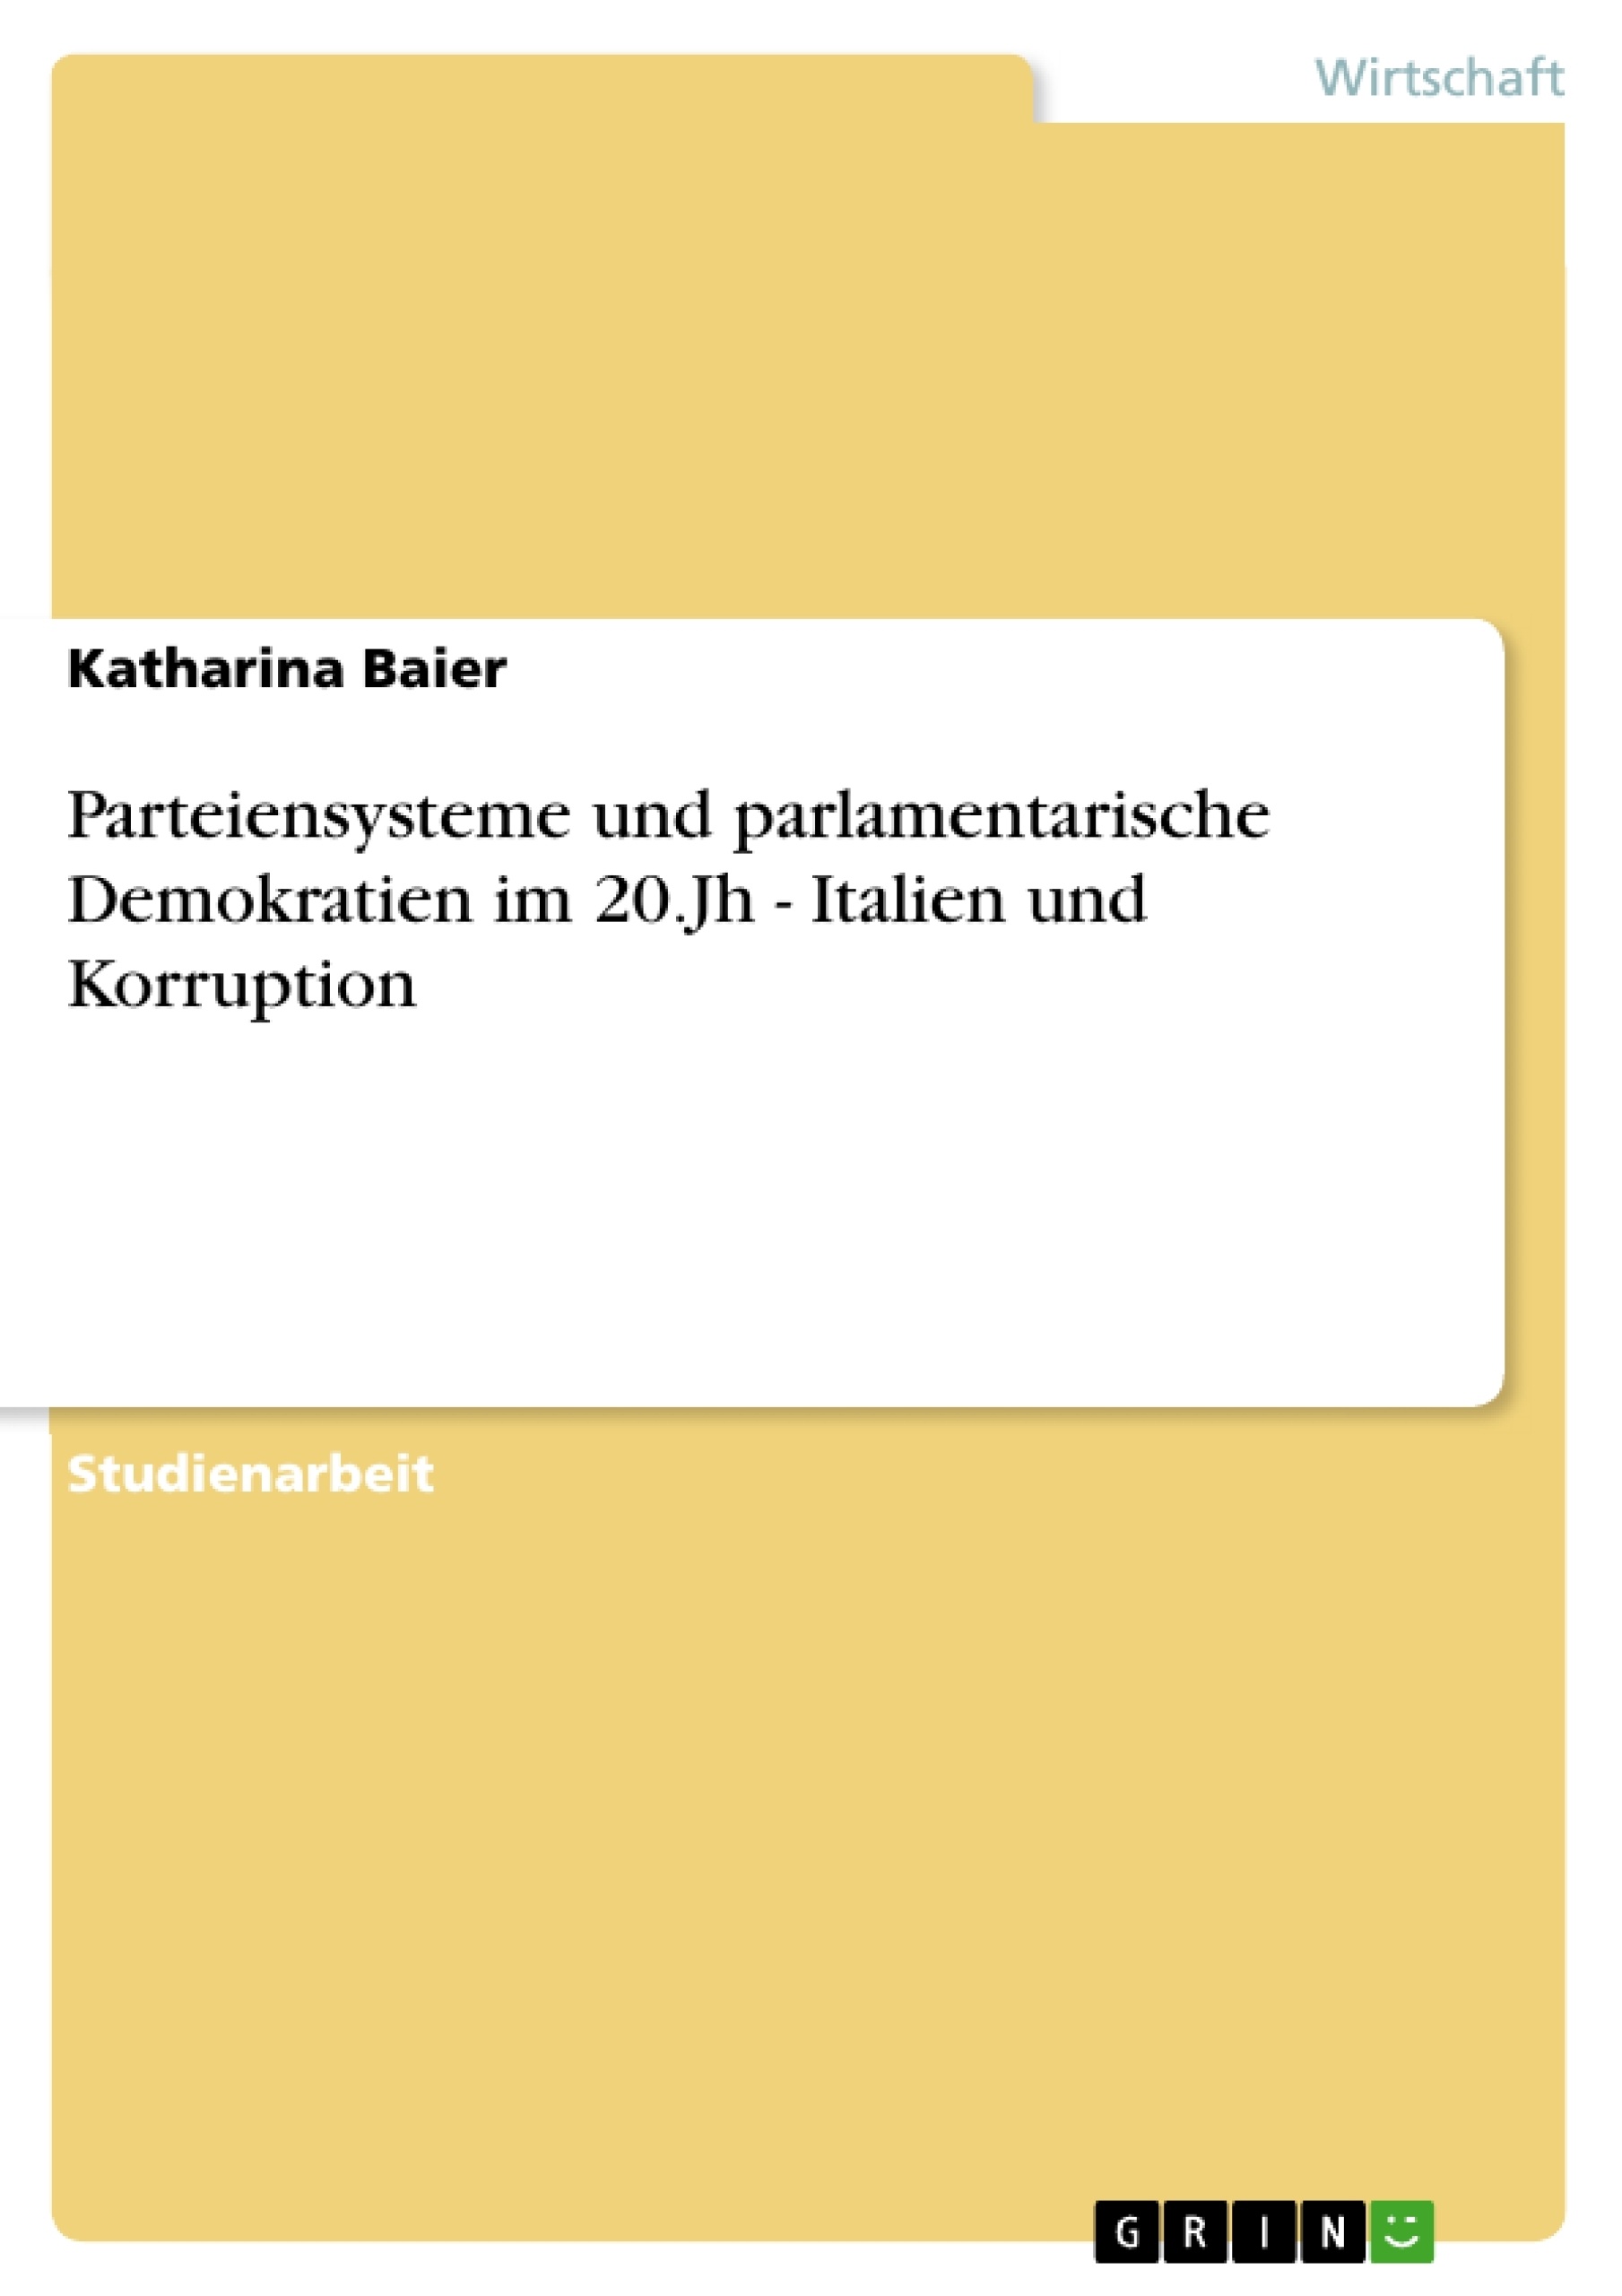 Title: Parteiensysteme und parlamentarische Demokratien im 20.Jh - Italien und Korruption